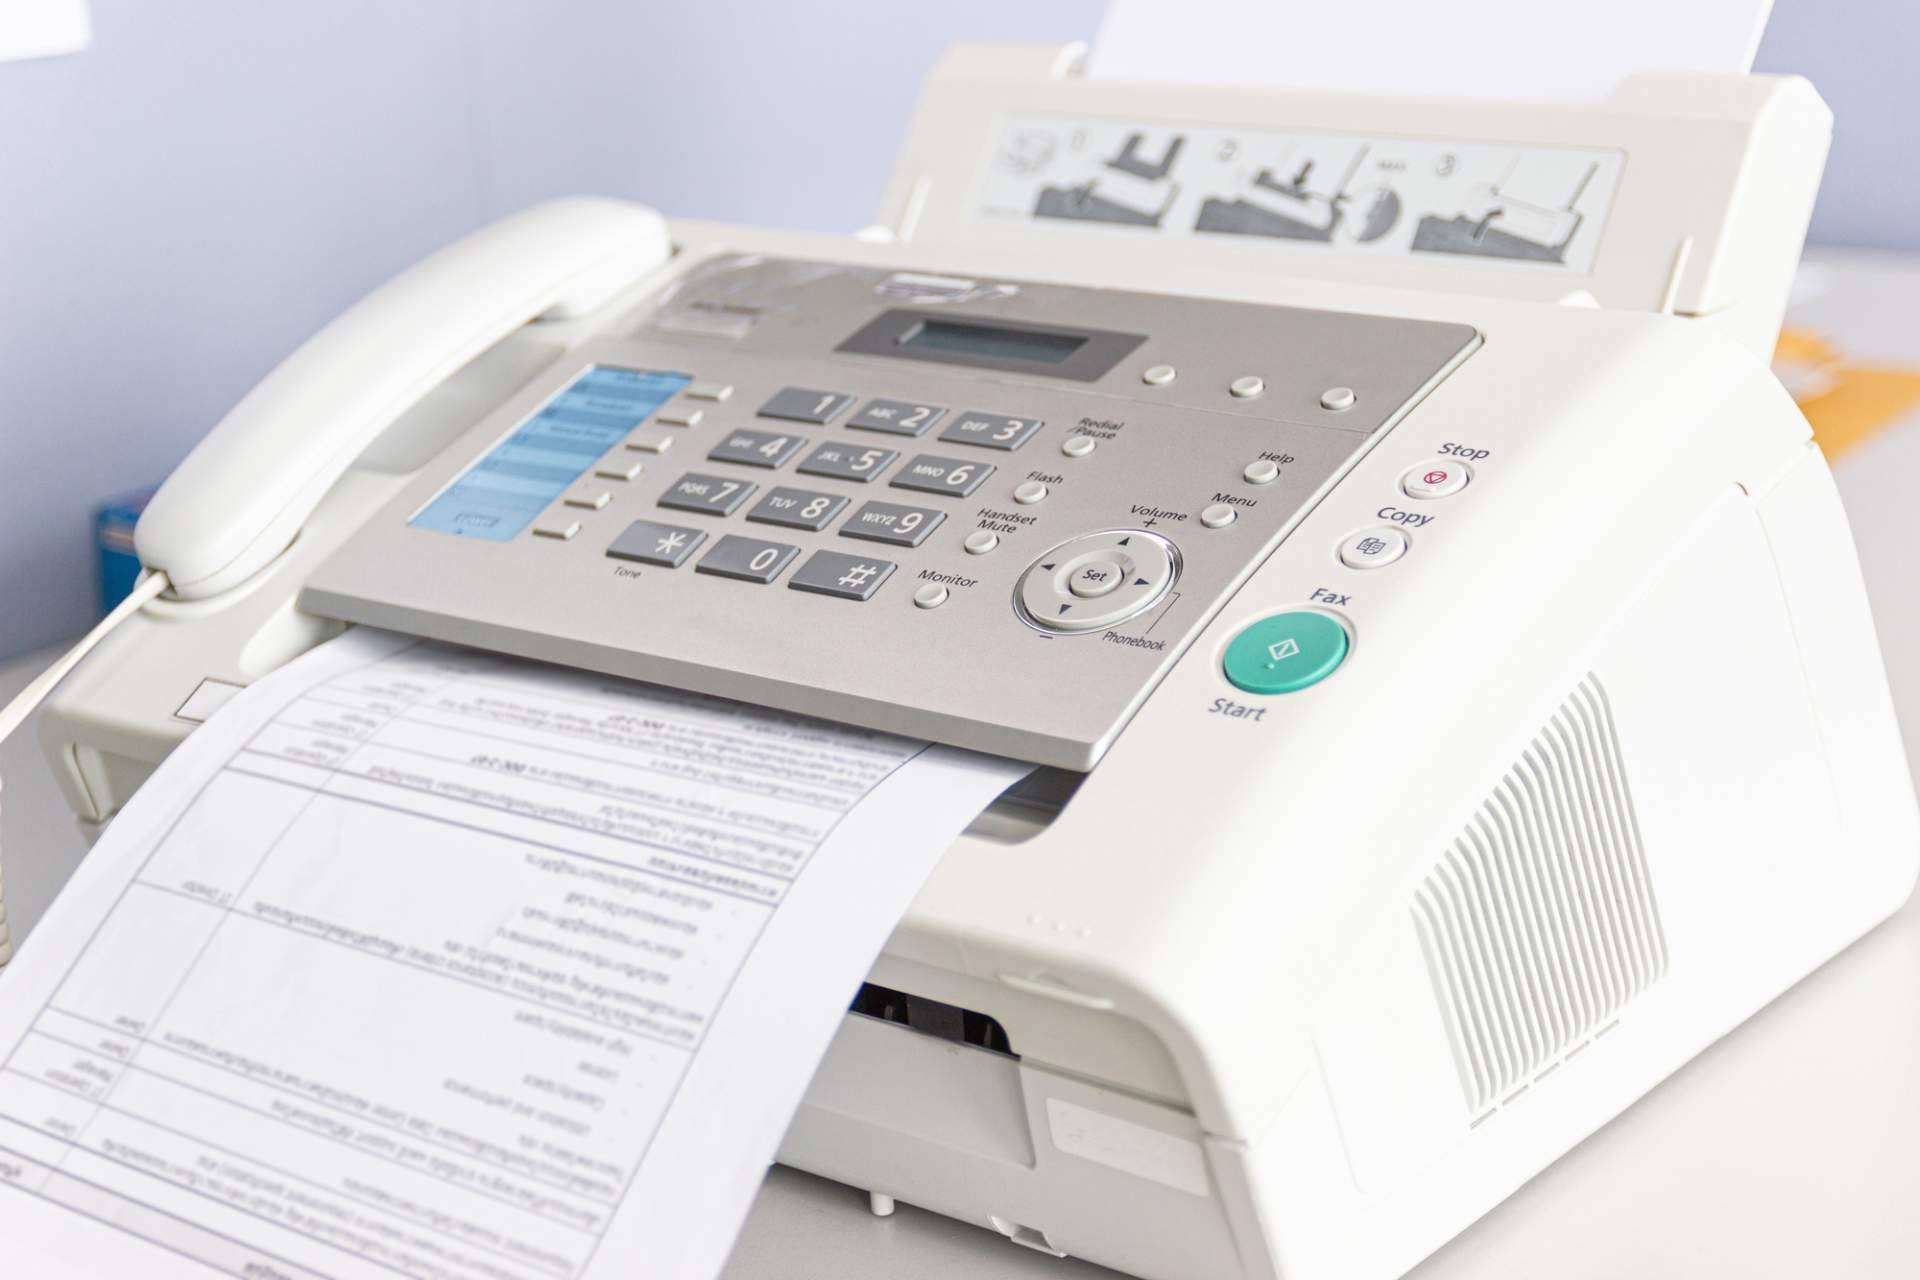 Las ventajas de usar un servicio de fax online